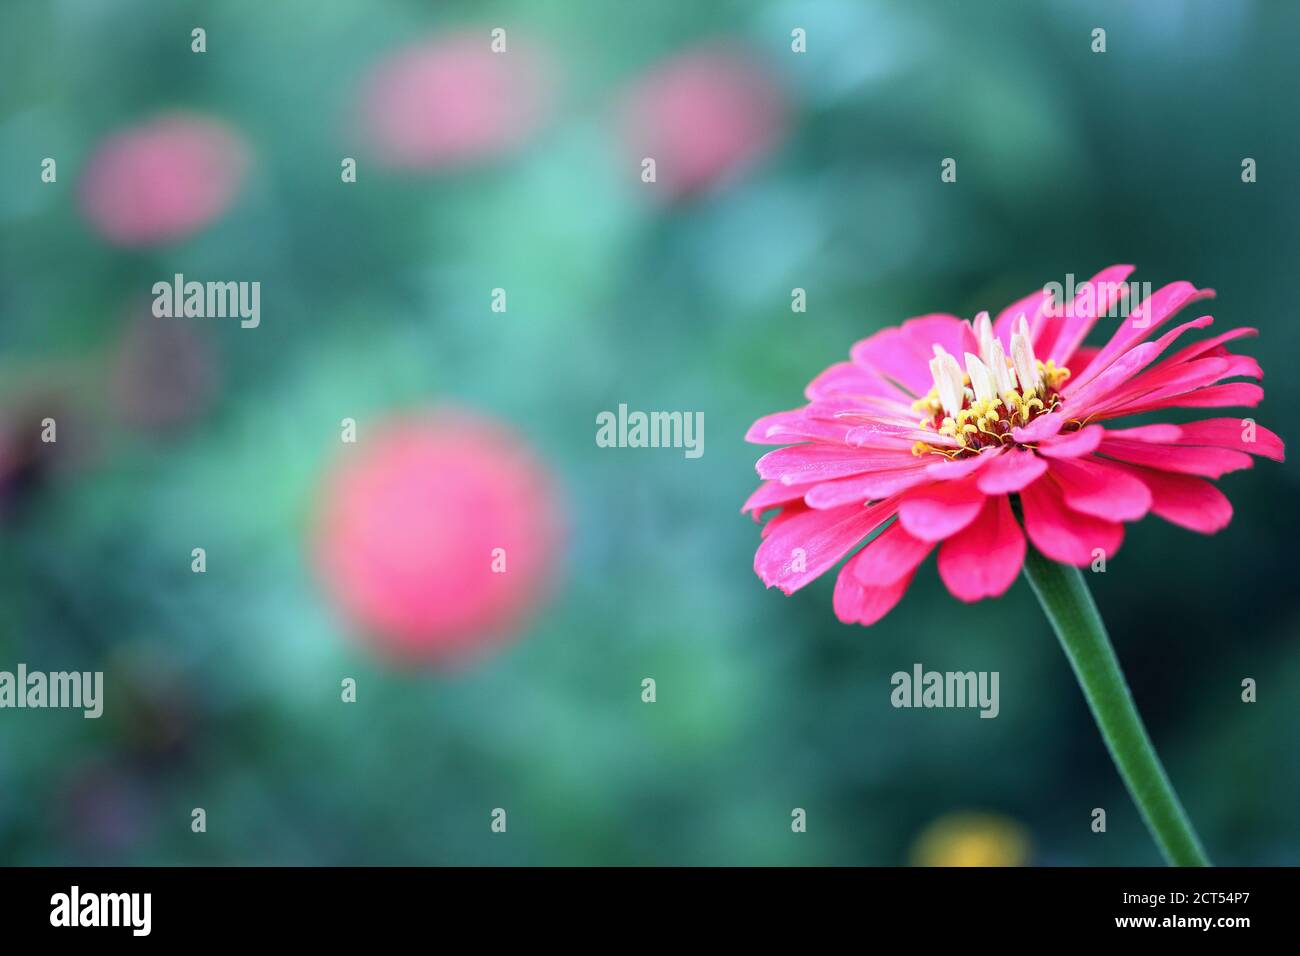 Nahaufnahme einer schönen lachsfarbenen Zinnia Blume im Garten. Selektiver Fokus mit unscharfem Hintergrund. Stockfoto